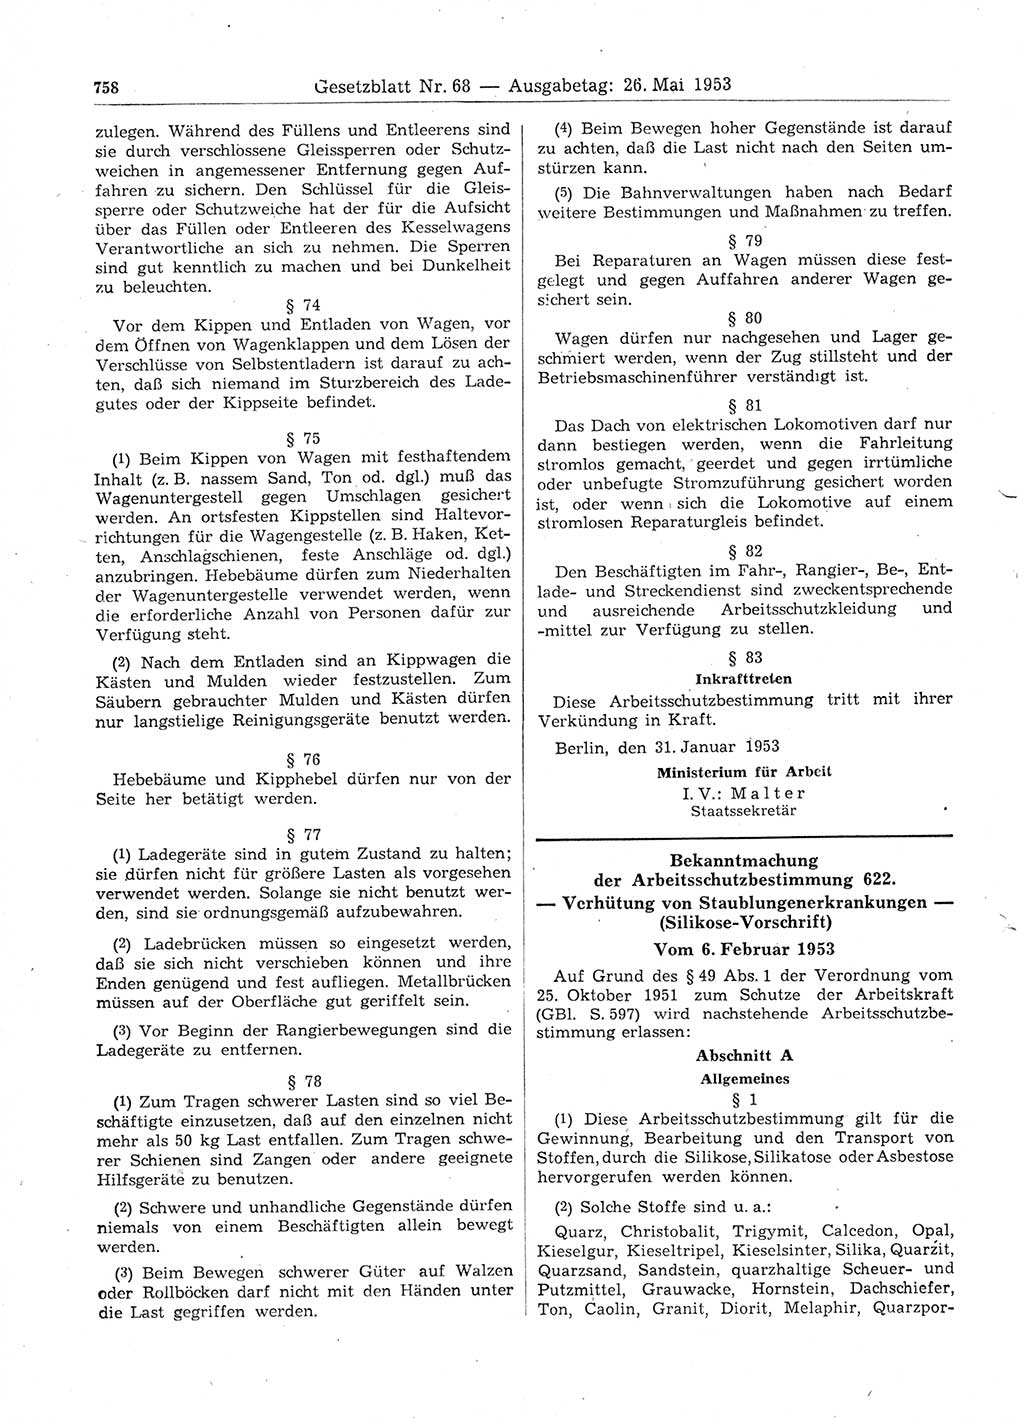 Gesetzblatt (GBl.) der Deutschen Demokratischen Republik (DDR) 1953, Seite 758 (GBl. DDR 1953, S. 758)